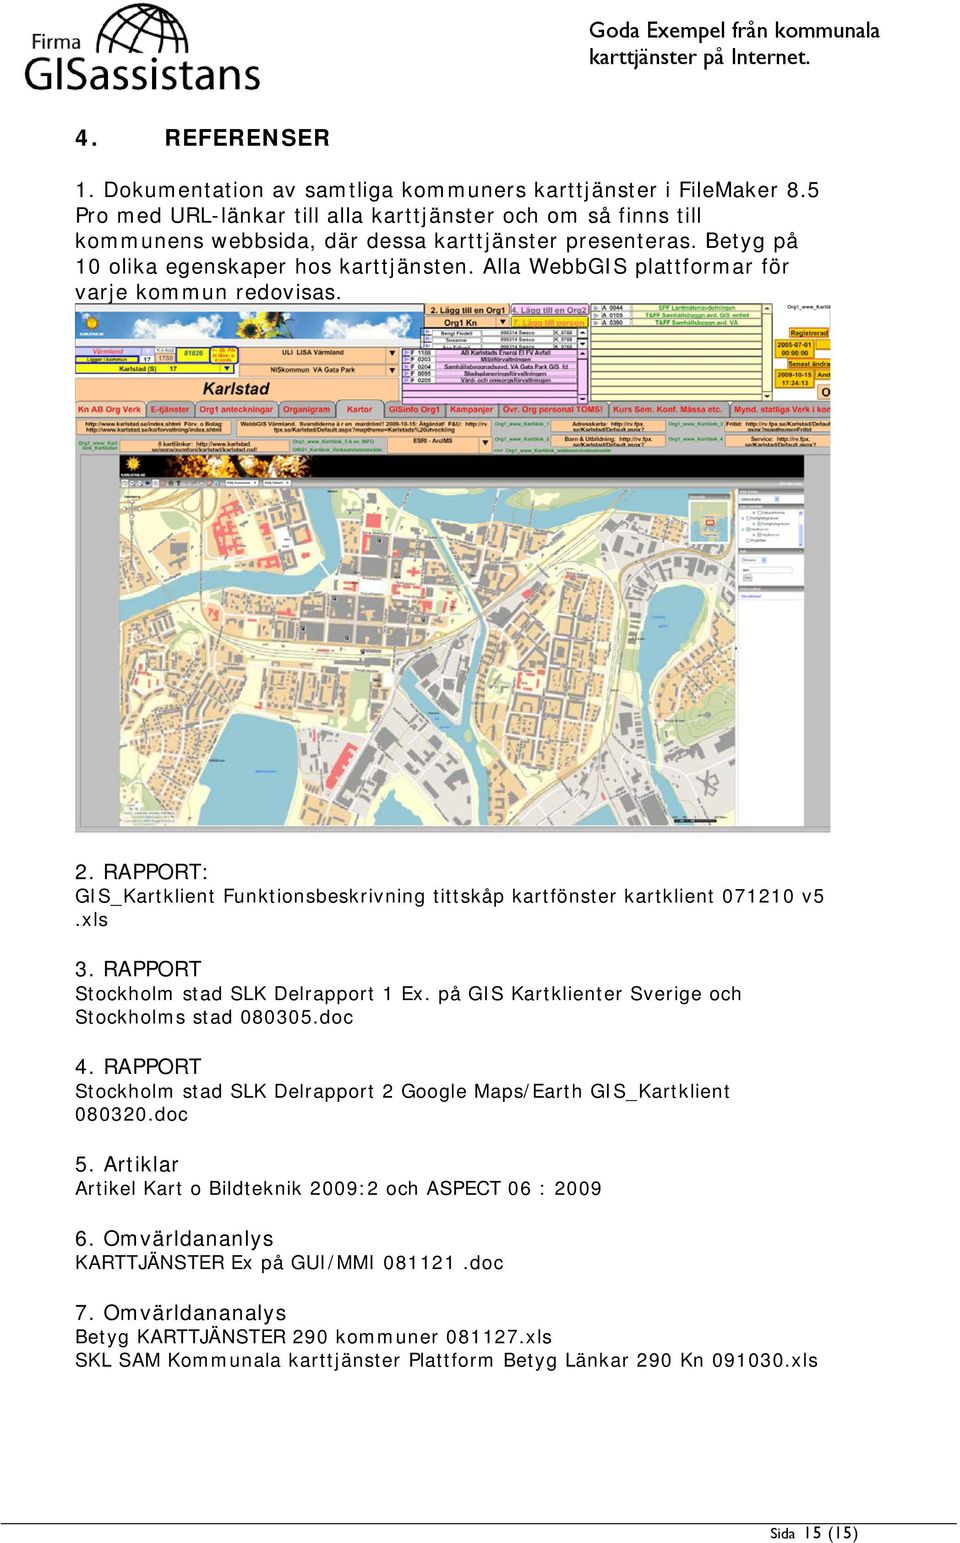 RAPPORT Stockholm stad SLK Delrapport 1 Ex. på GIS Kartklienter Sverige och Stockholms stad 080305.doc 4. RAPPORT Stockholm stad SLK Delrapport 2 Google Maps/Earth GIS_Kartklient 080320.doc 5.